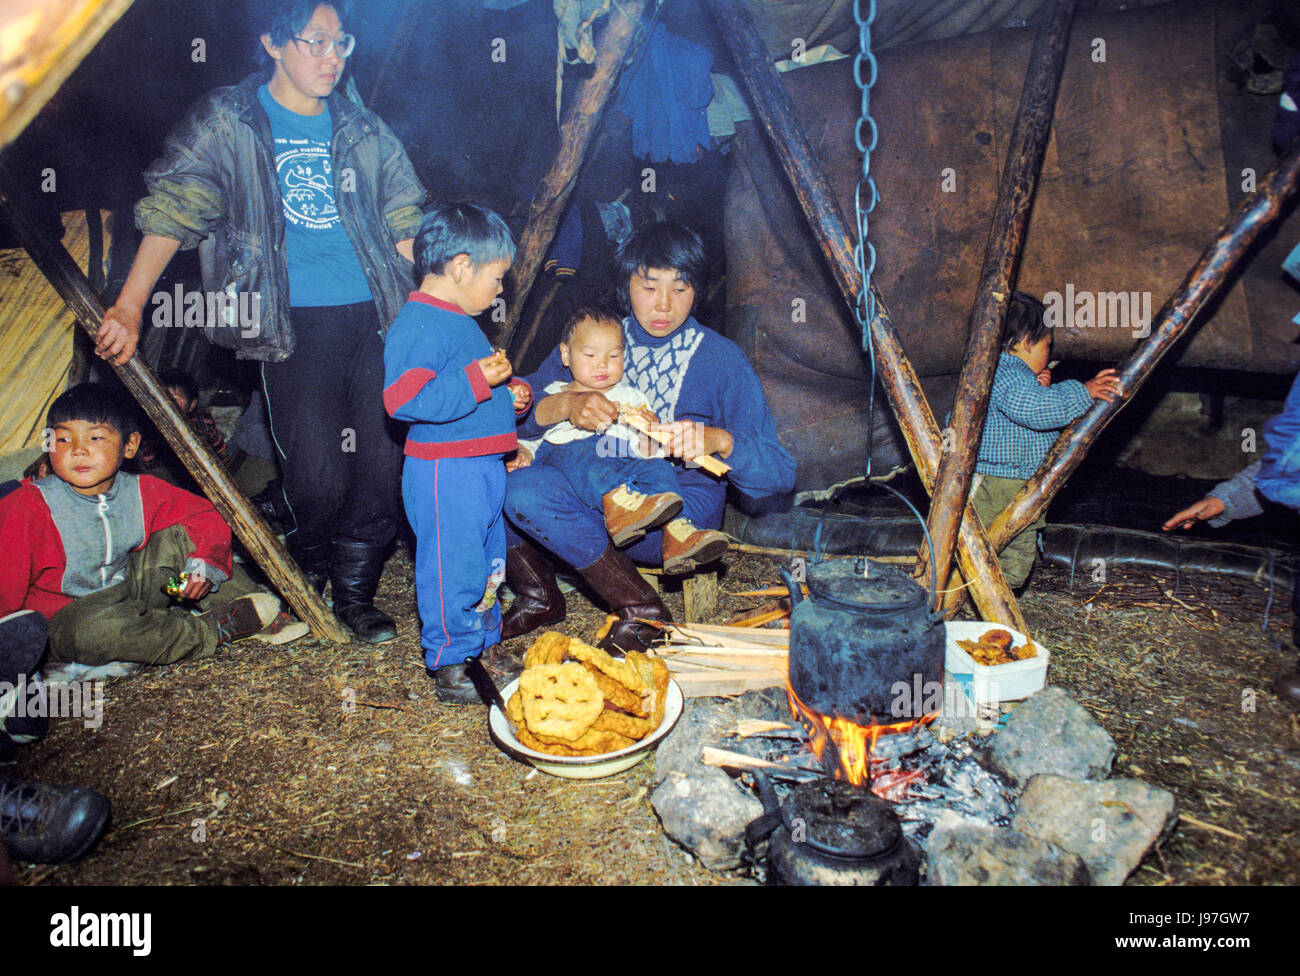 Des éleveurs de rennes de Chukchi nomades Campement yourte sur les Tchouktche ou péninsule Chukotka, dans l'Extrême-Orient russe. Banque D'Images